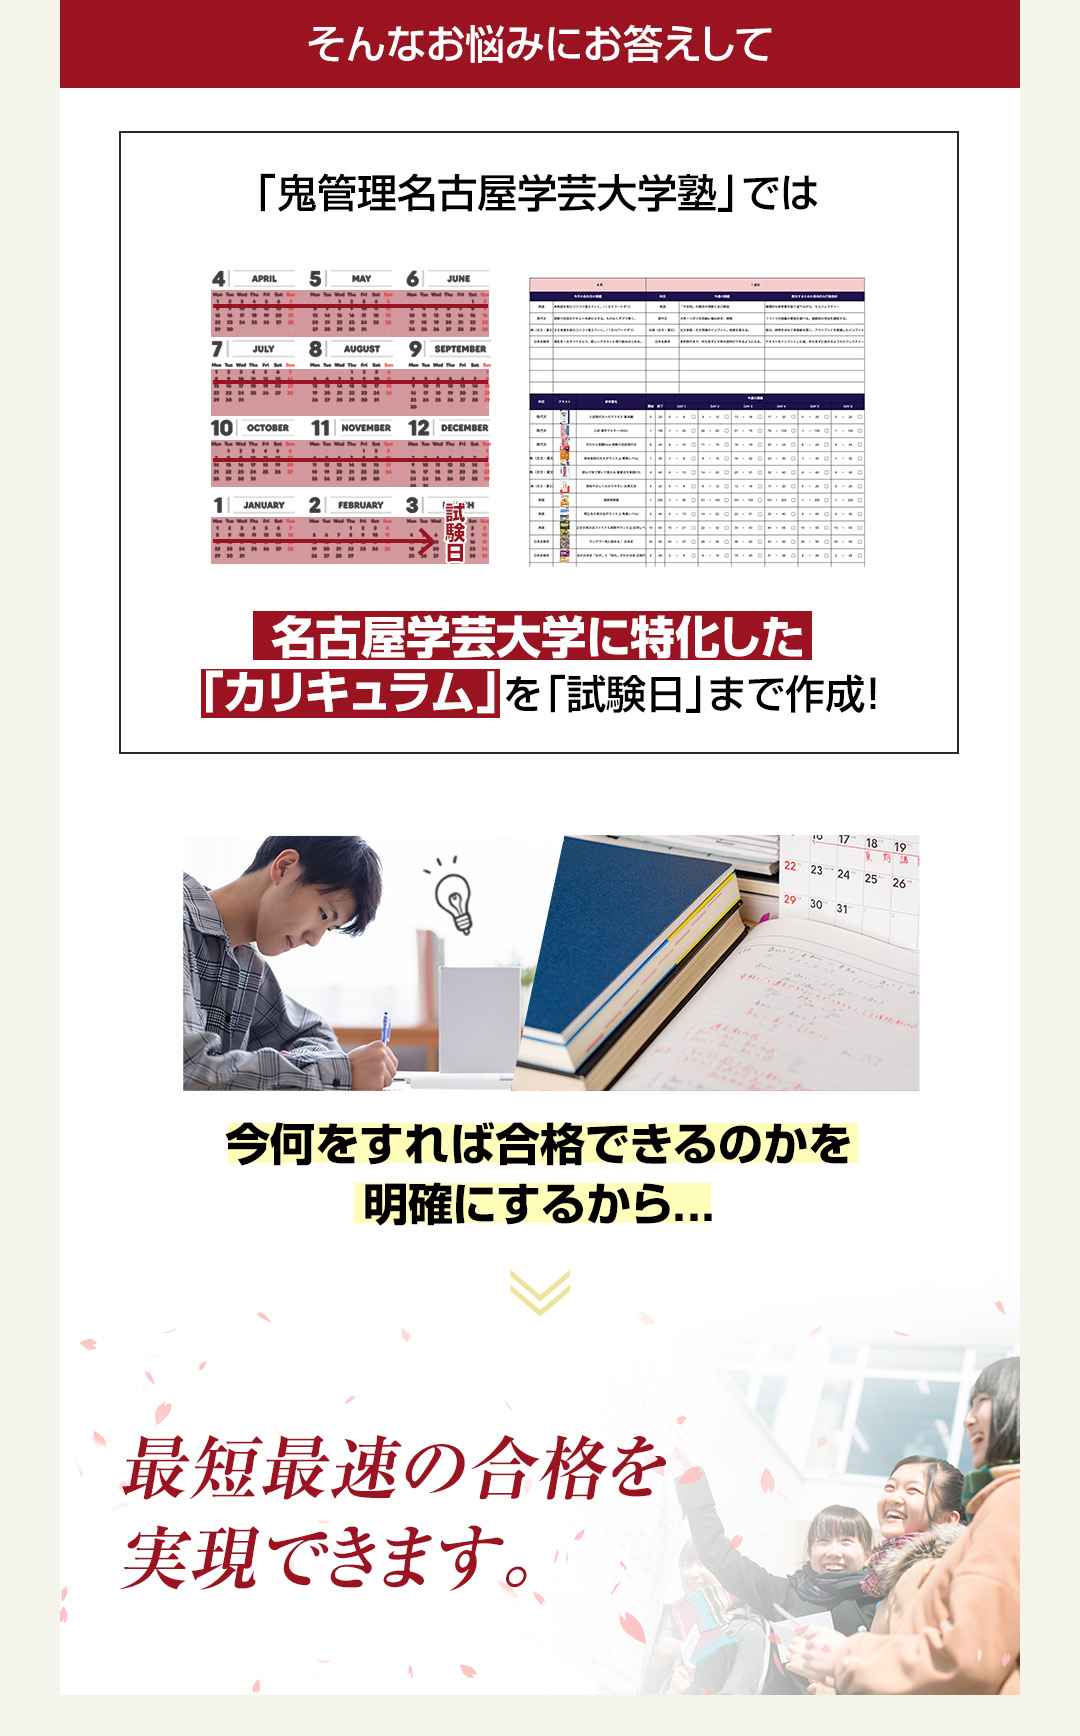 「鬼管理名古屋学芸大学塾」では名古屋学芸大学校に特化した「カリキュラム」を「試験日」まで作成